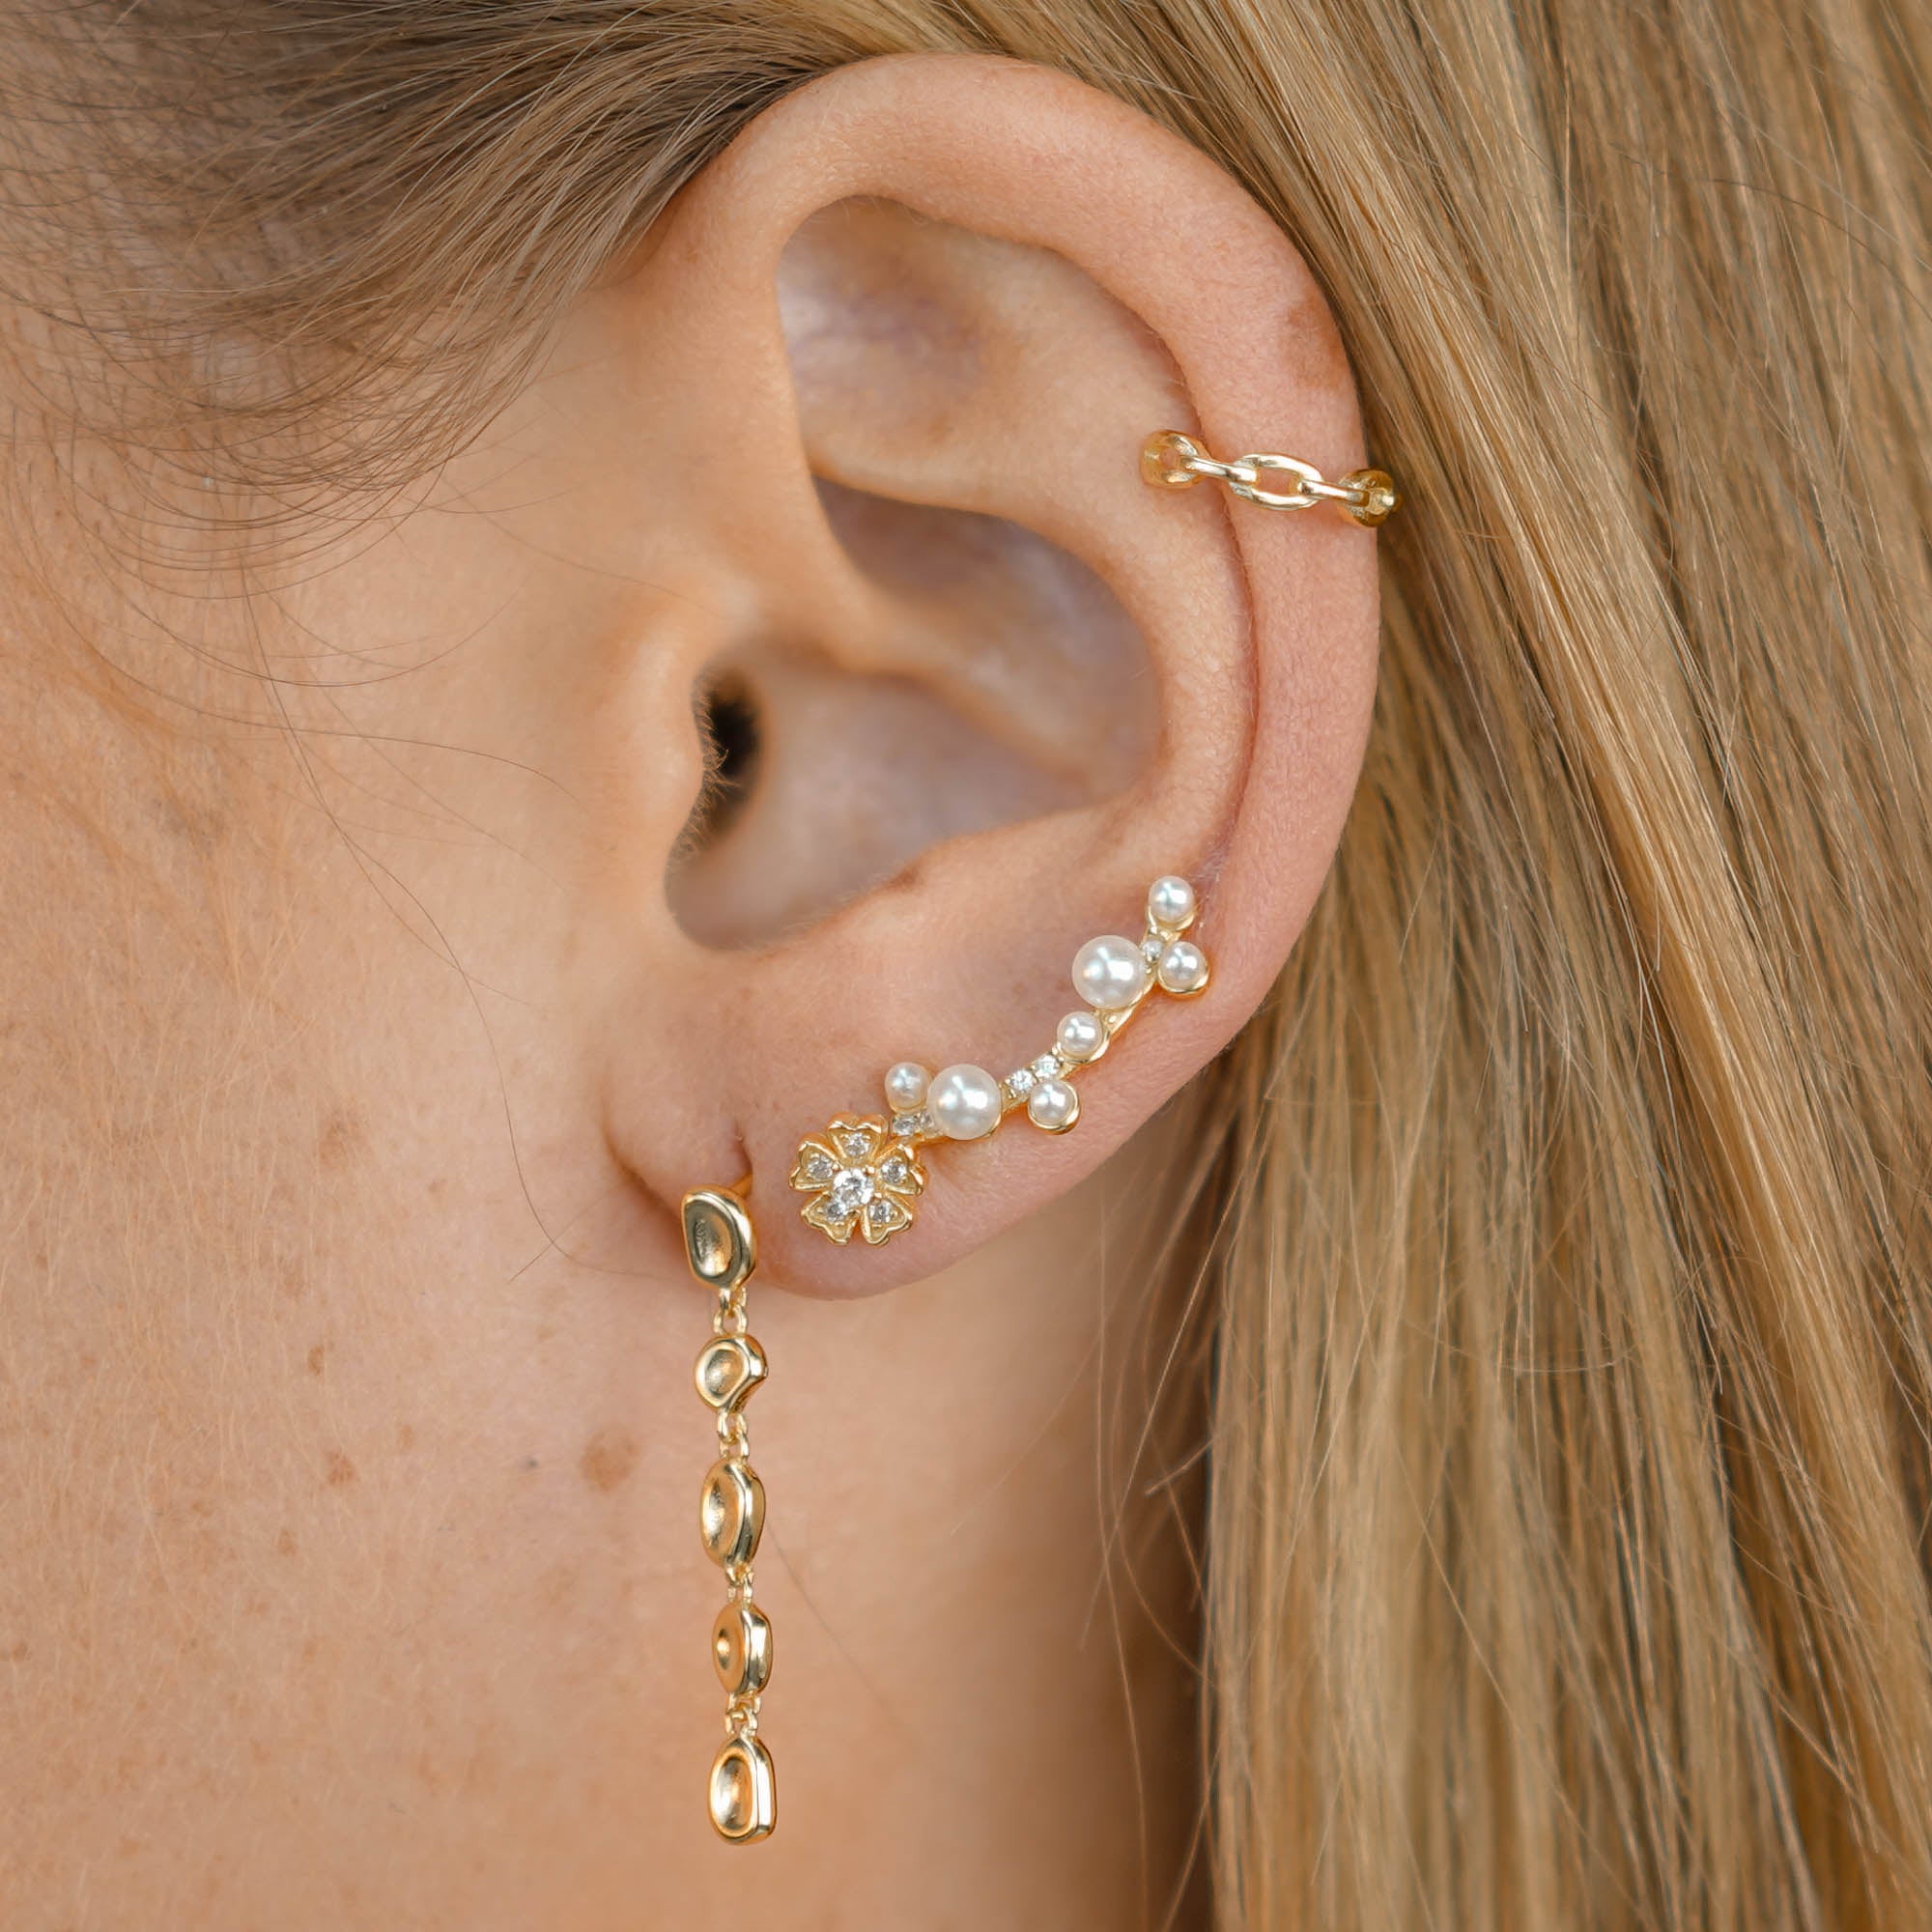 Fleur Sapphire Stud Earrings